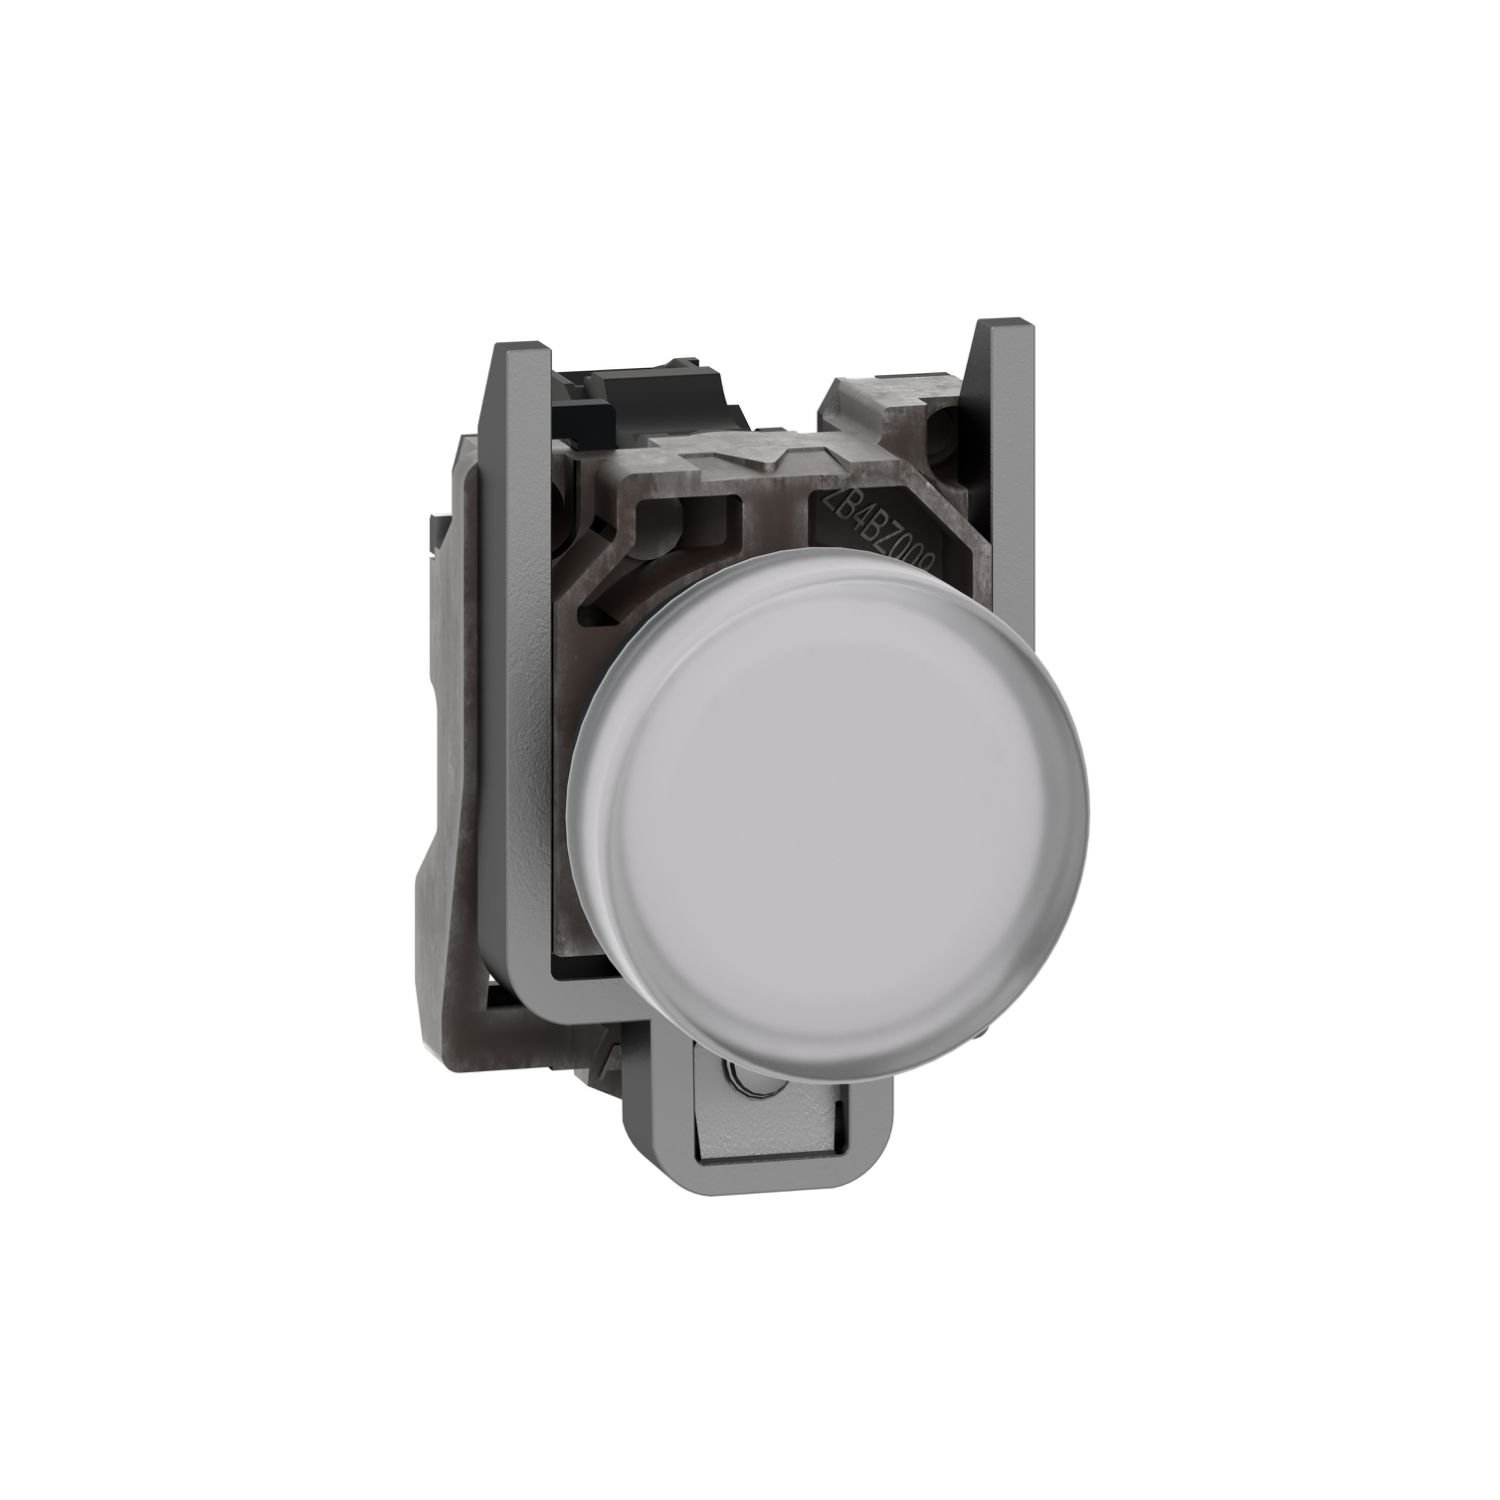 XB4BVG1 Harmony XB4, Pilot light, metal, white, Ø22, plain lens with integral LED, 110…120 VAC